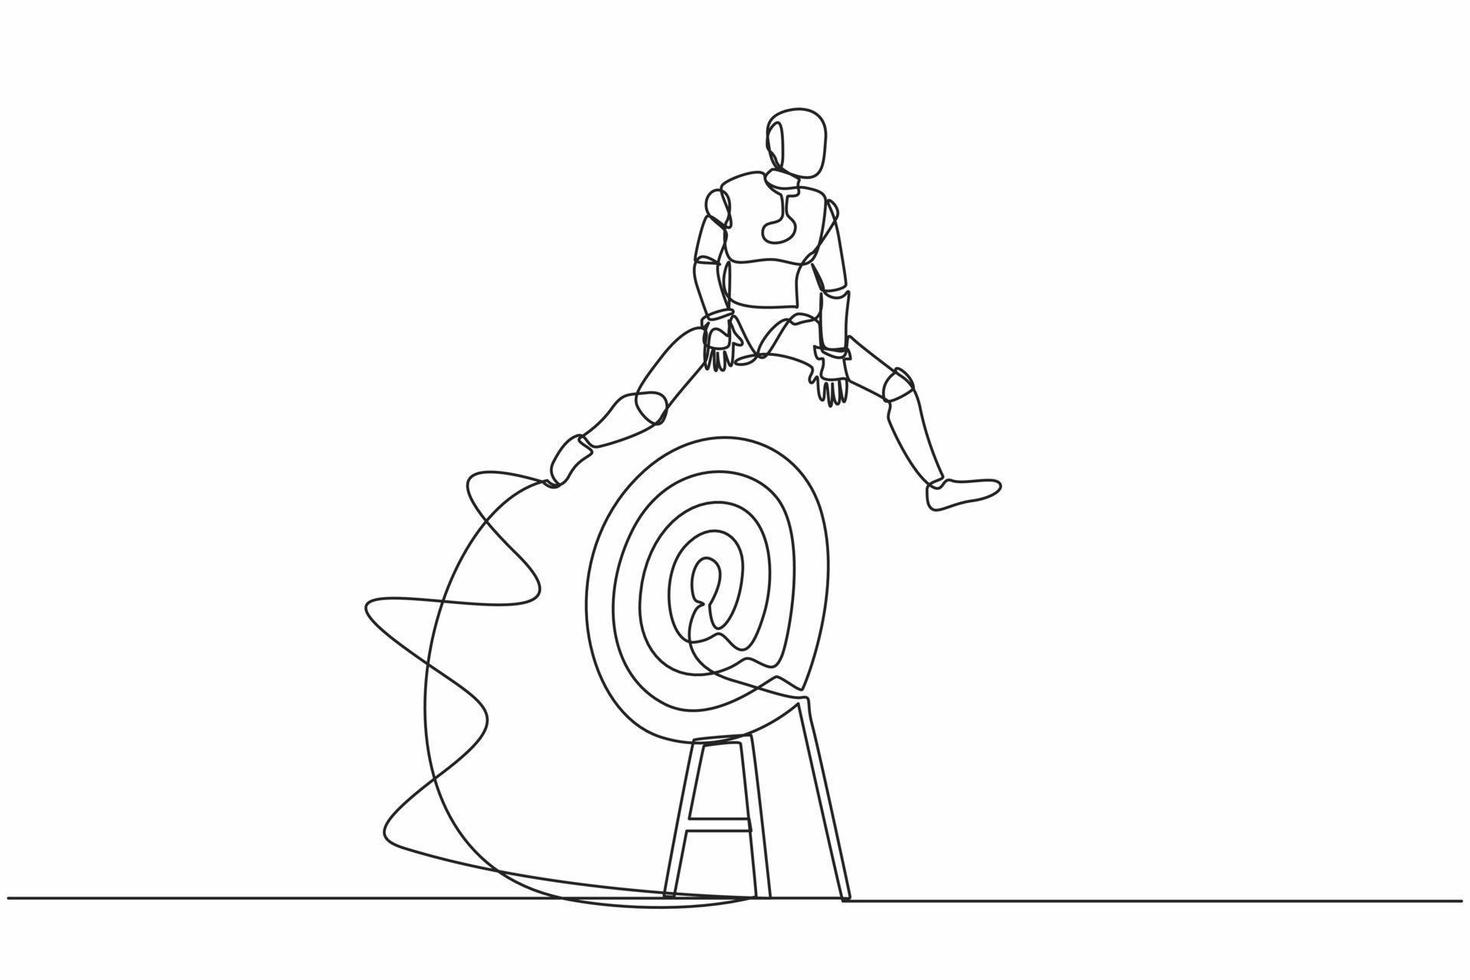 Ein einziger Strichzeichnungsroboter, der auf ein großes Bogenschießen-Bullseye-Ziel springt. Zielerreichung Ziele. zukünftige Technologieentwicklung. künstliche Intelligenz. ununterbrochene Linie zeichnen Design-Vektor-Illustration vektor